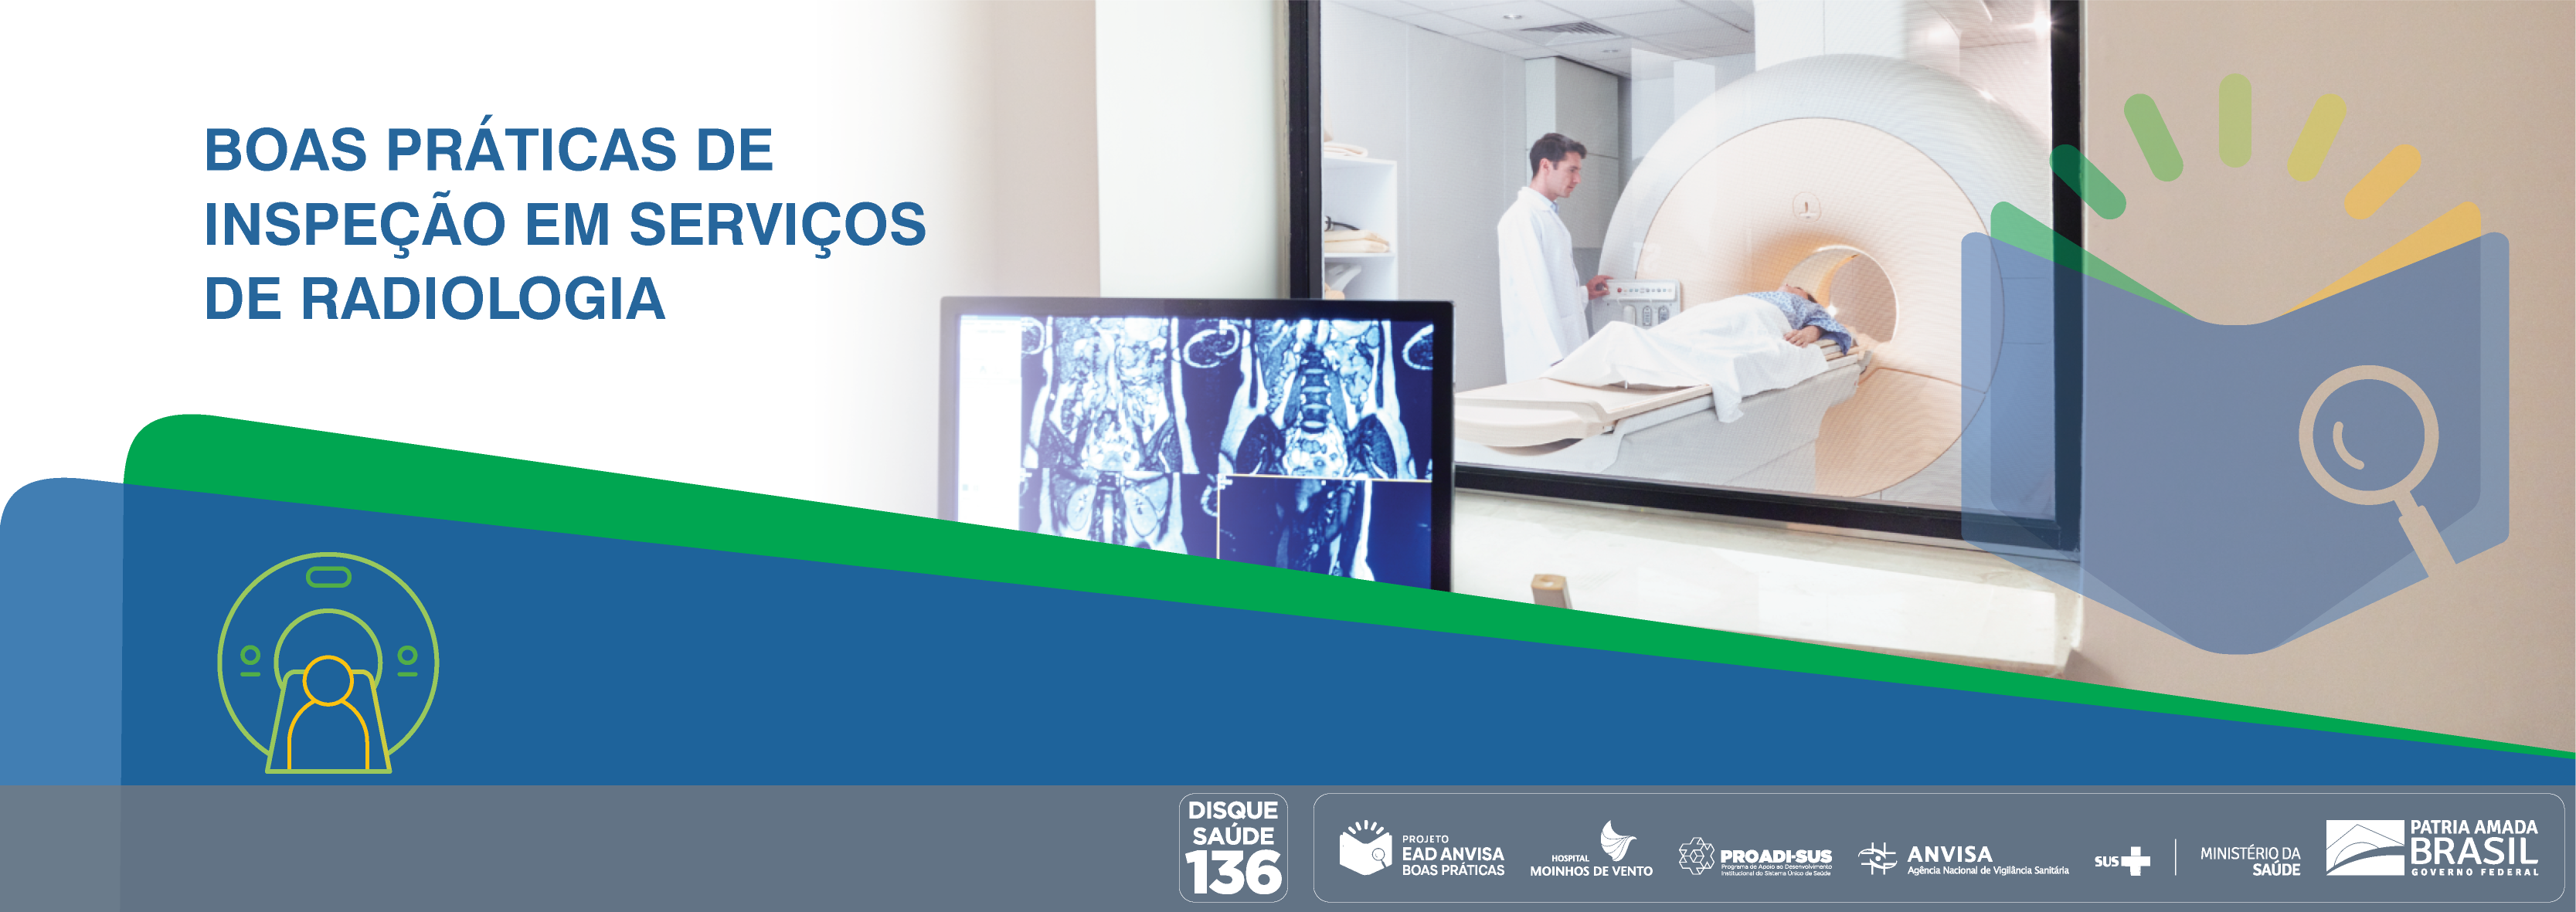 Boas Práticas de Inspeção em Serviços de Radiologia ANVISA_2020_BPISR